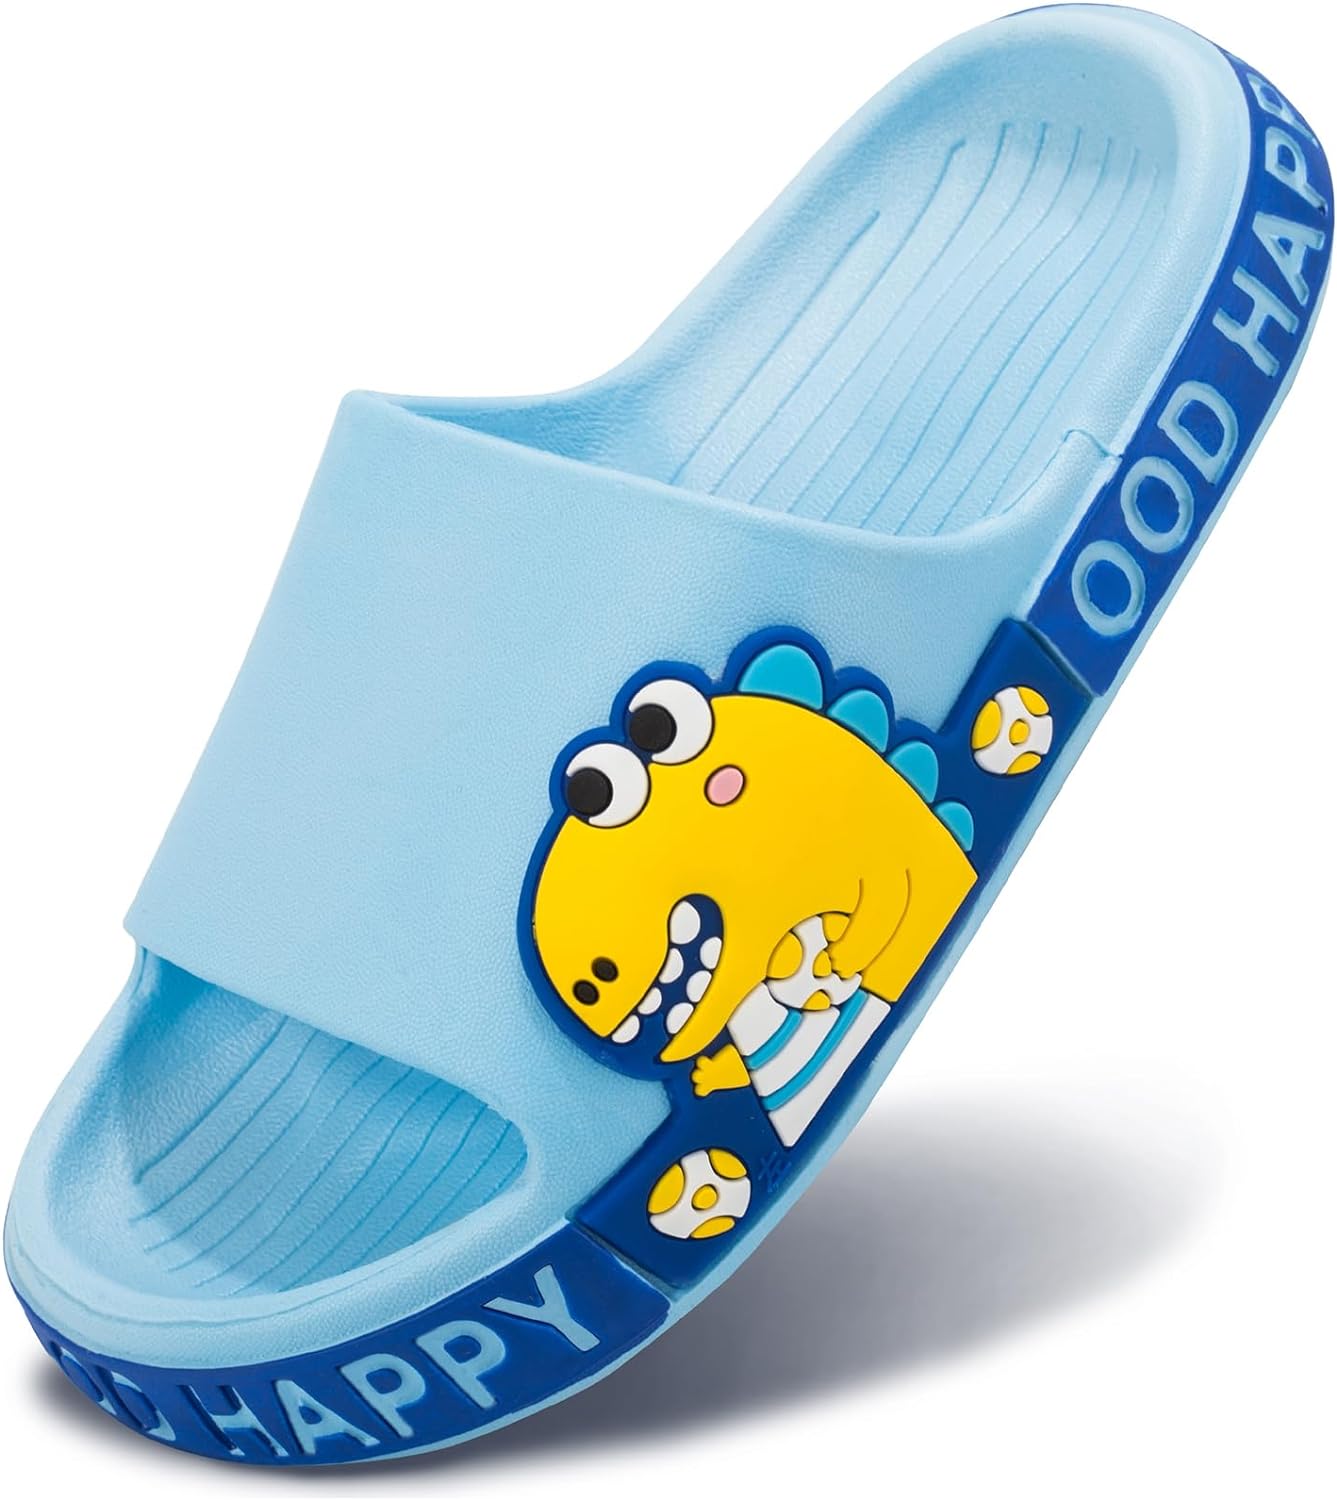 UPSOLO Slides For Kids, Boys Girls Sandals Toddler Slippers, Non-slip Shower Beach Cute Dinosaur Shoes